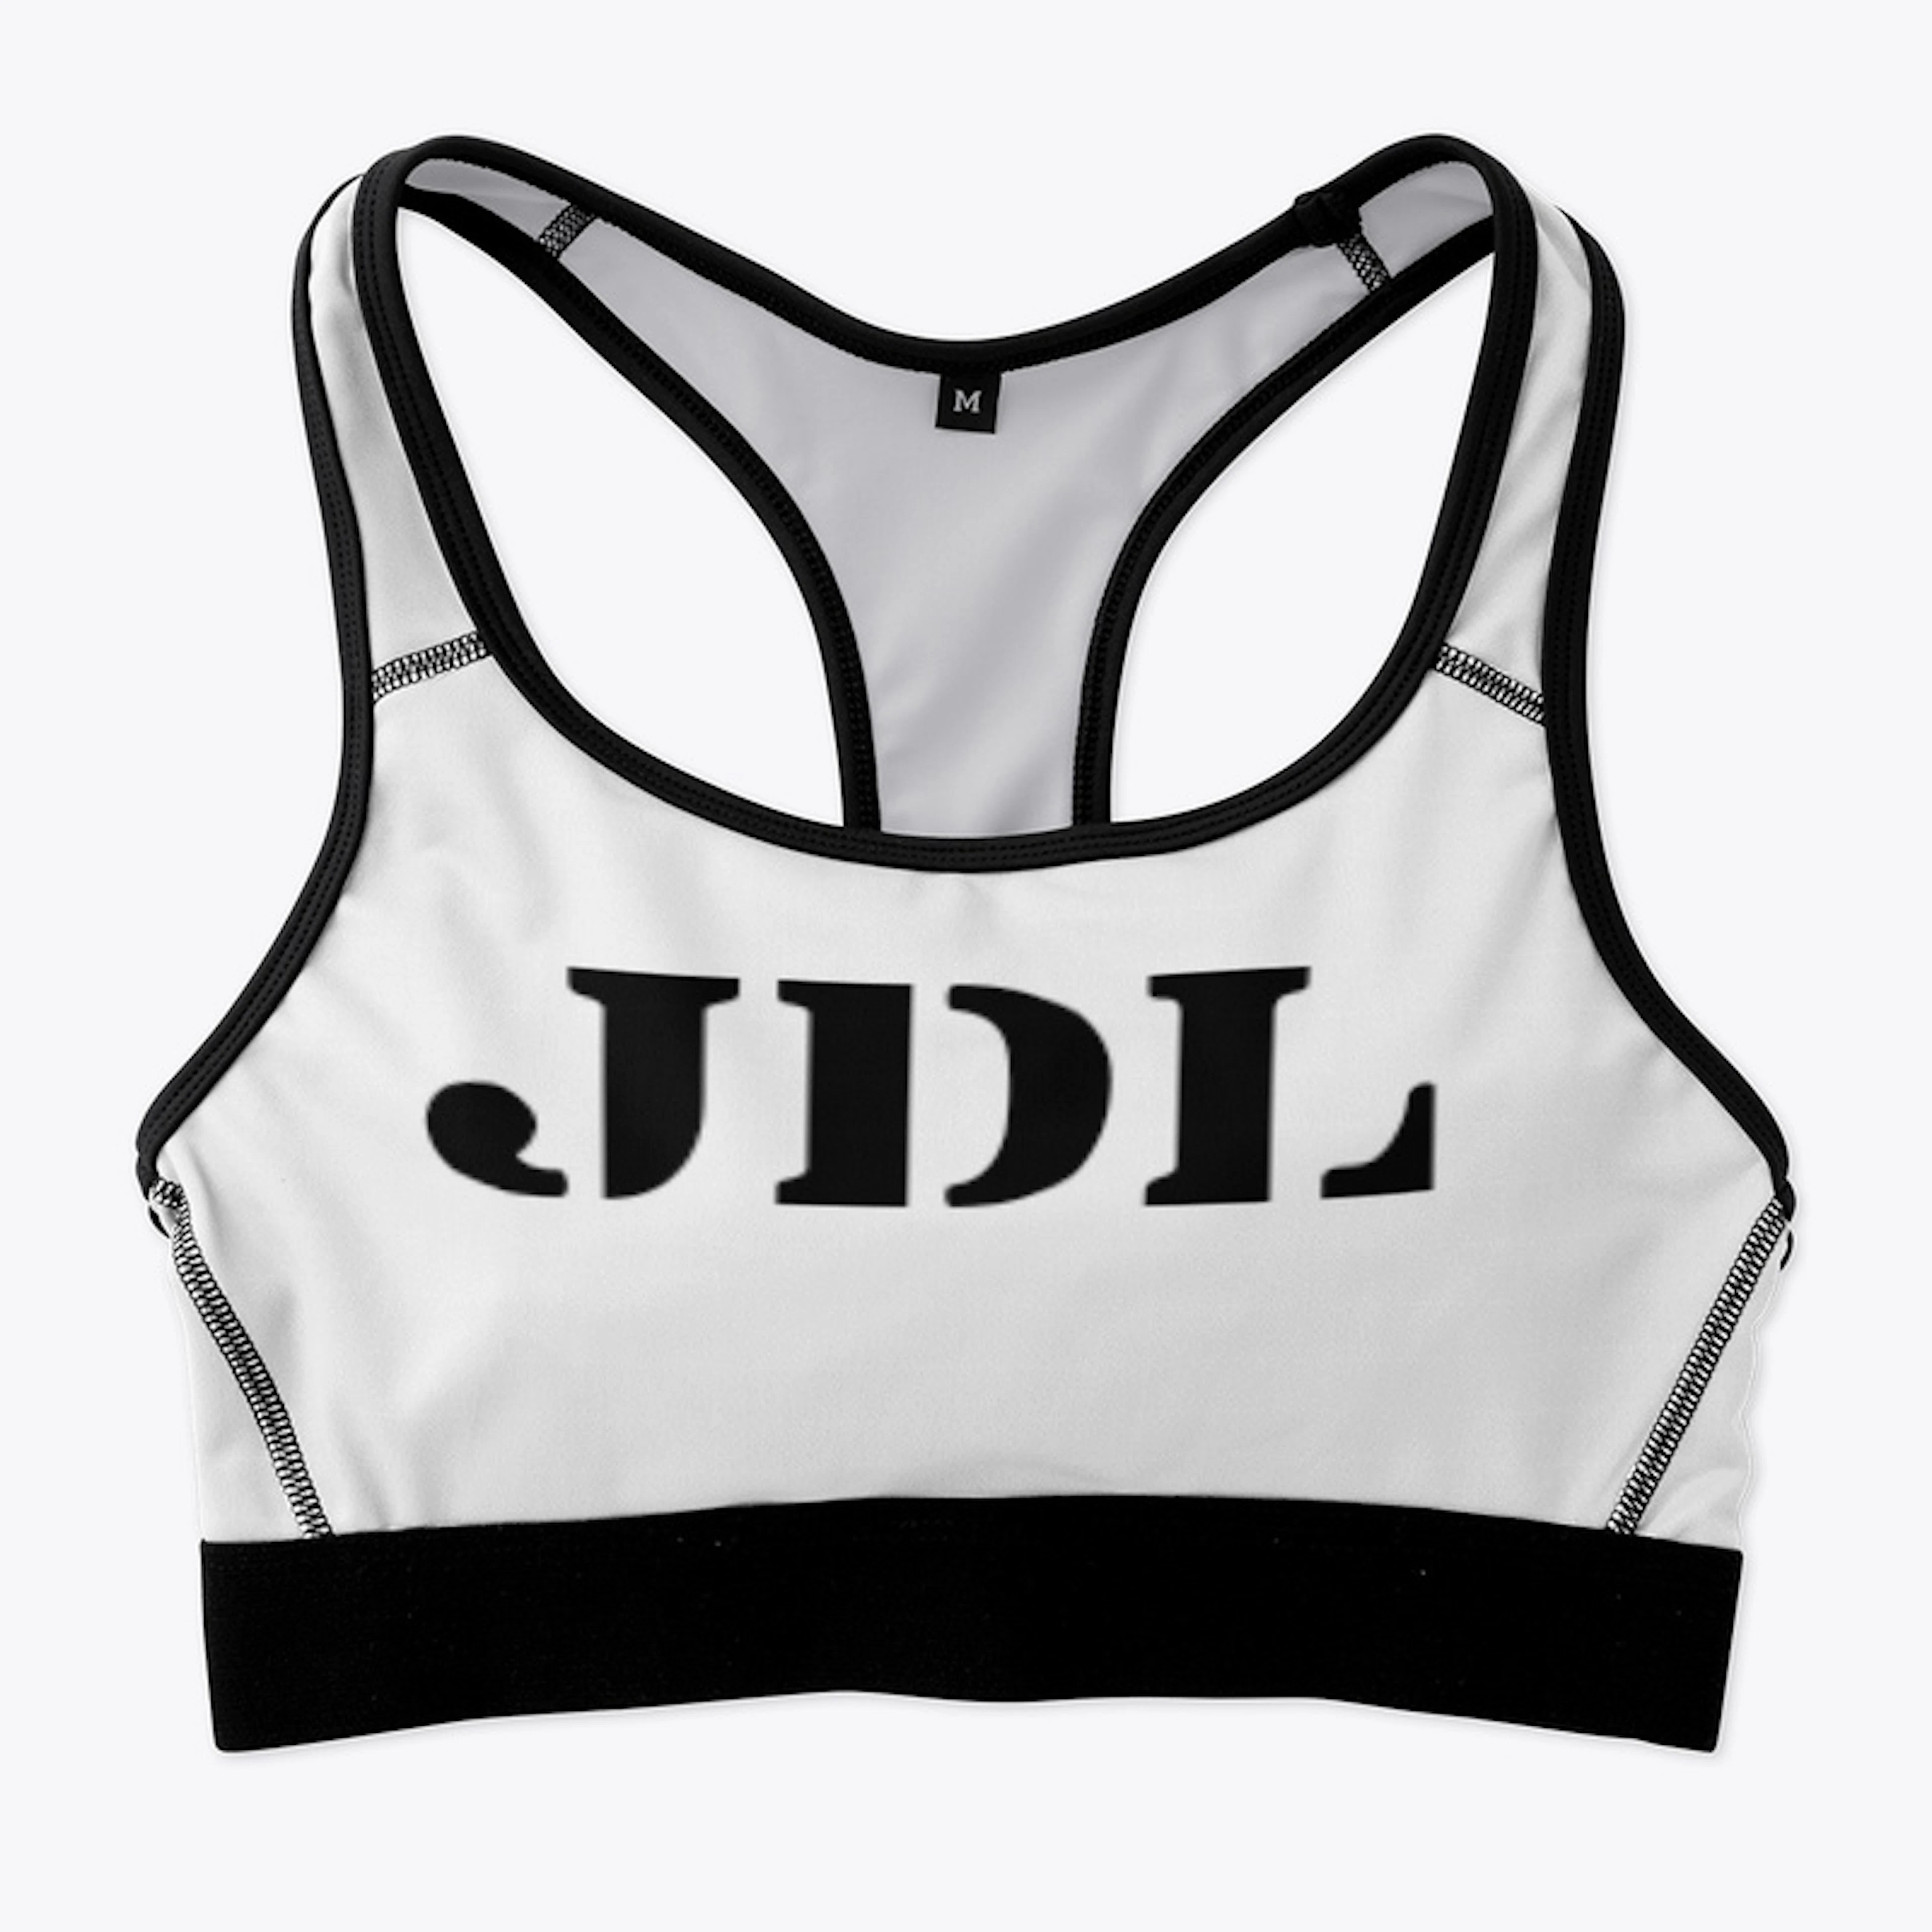 JDL women wear